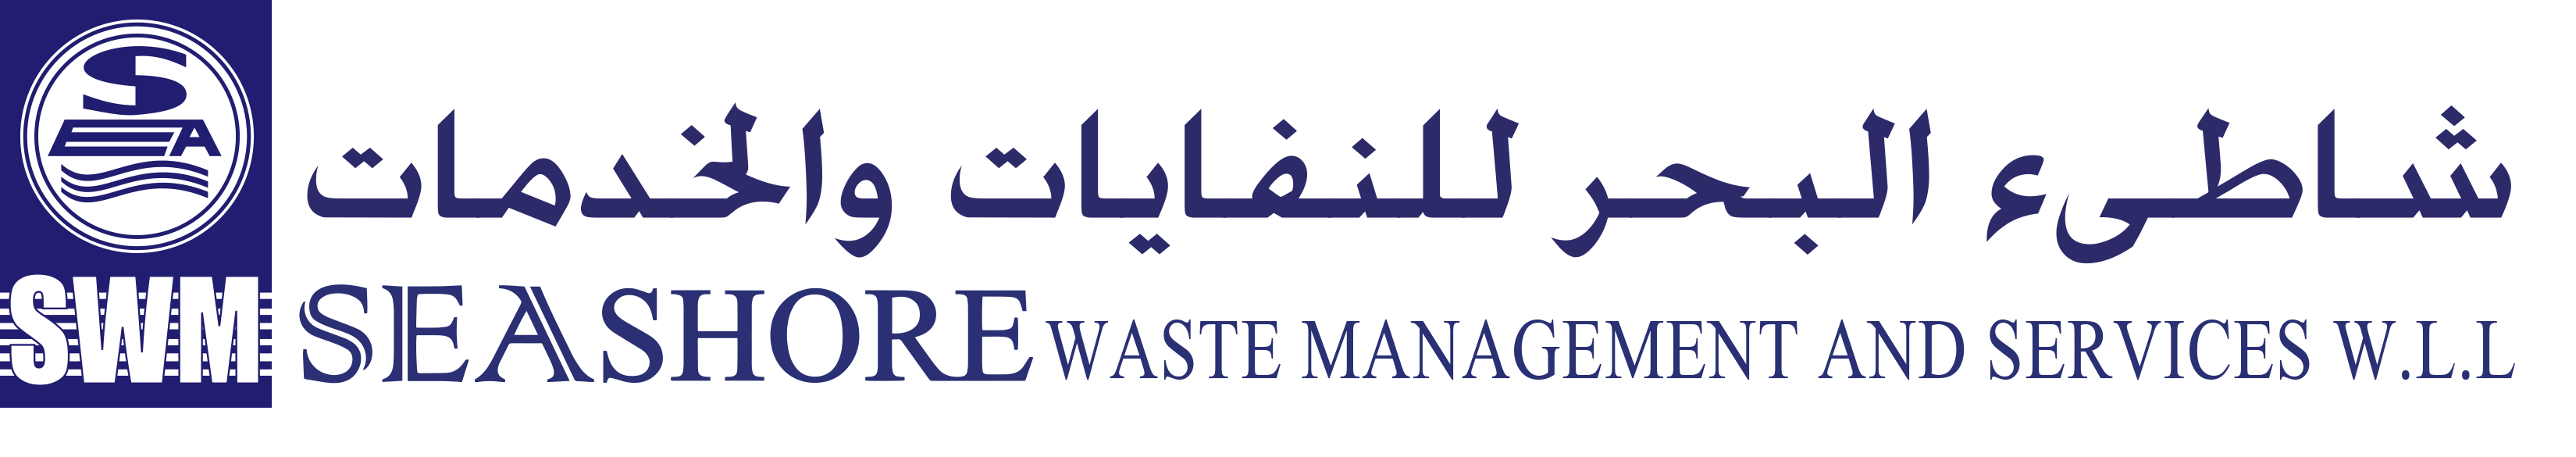 Seashore Waste Management